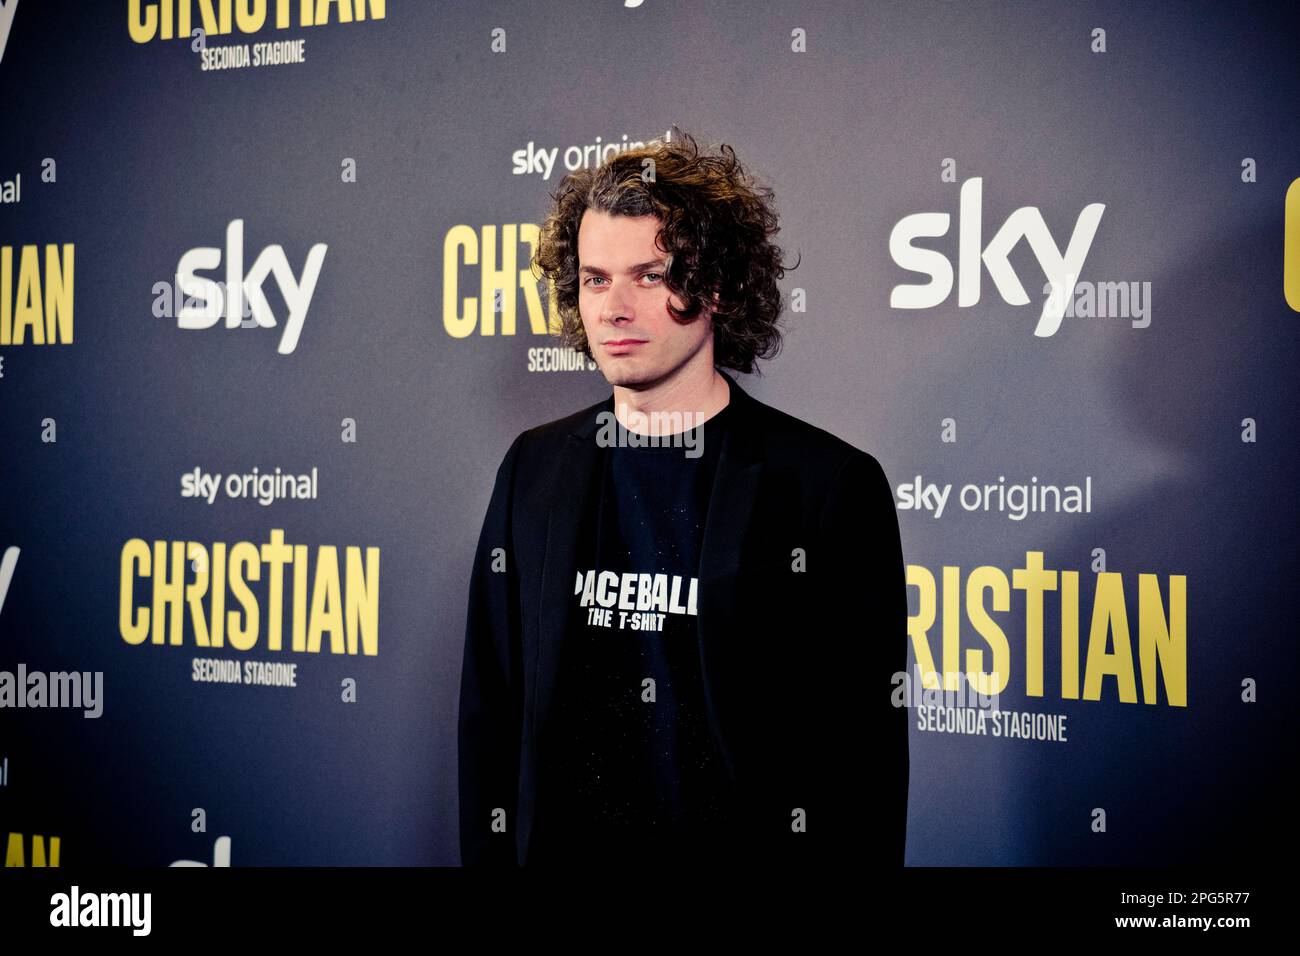 Rome, Italy, 20th March 2023, Stefano Lodovichi attends the premiere of 'Christian - seconda stagione' at Cinema Barberini (Photo credits: Giovanna On Stock Photo